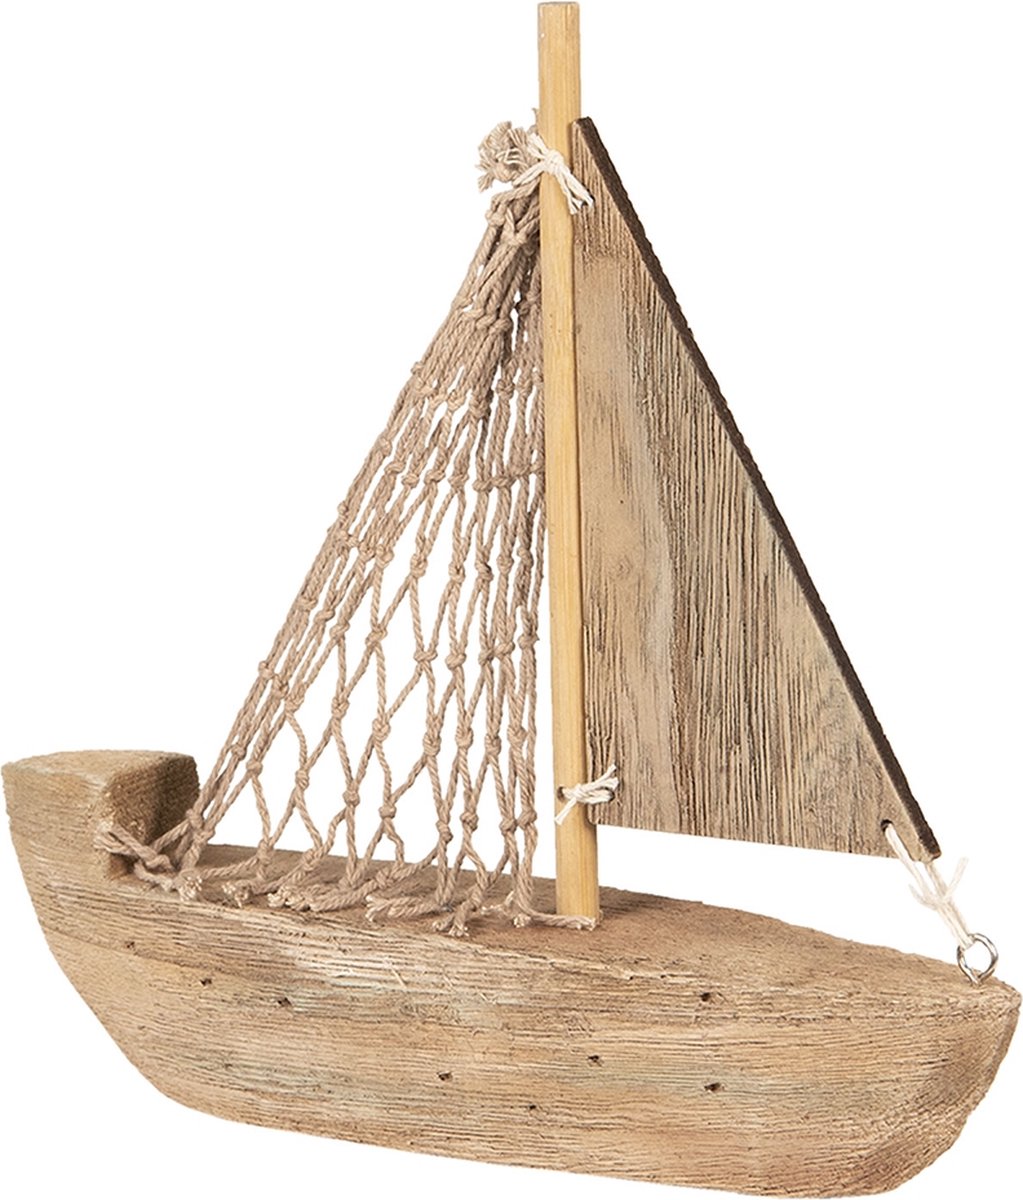 rétro Style méditerranéen en Bois Mini Bateau à Voile modèle décor dameublement Alivier Modèle de voilier en Bois 